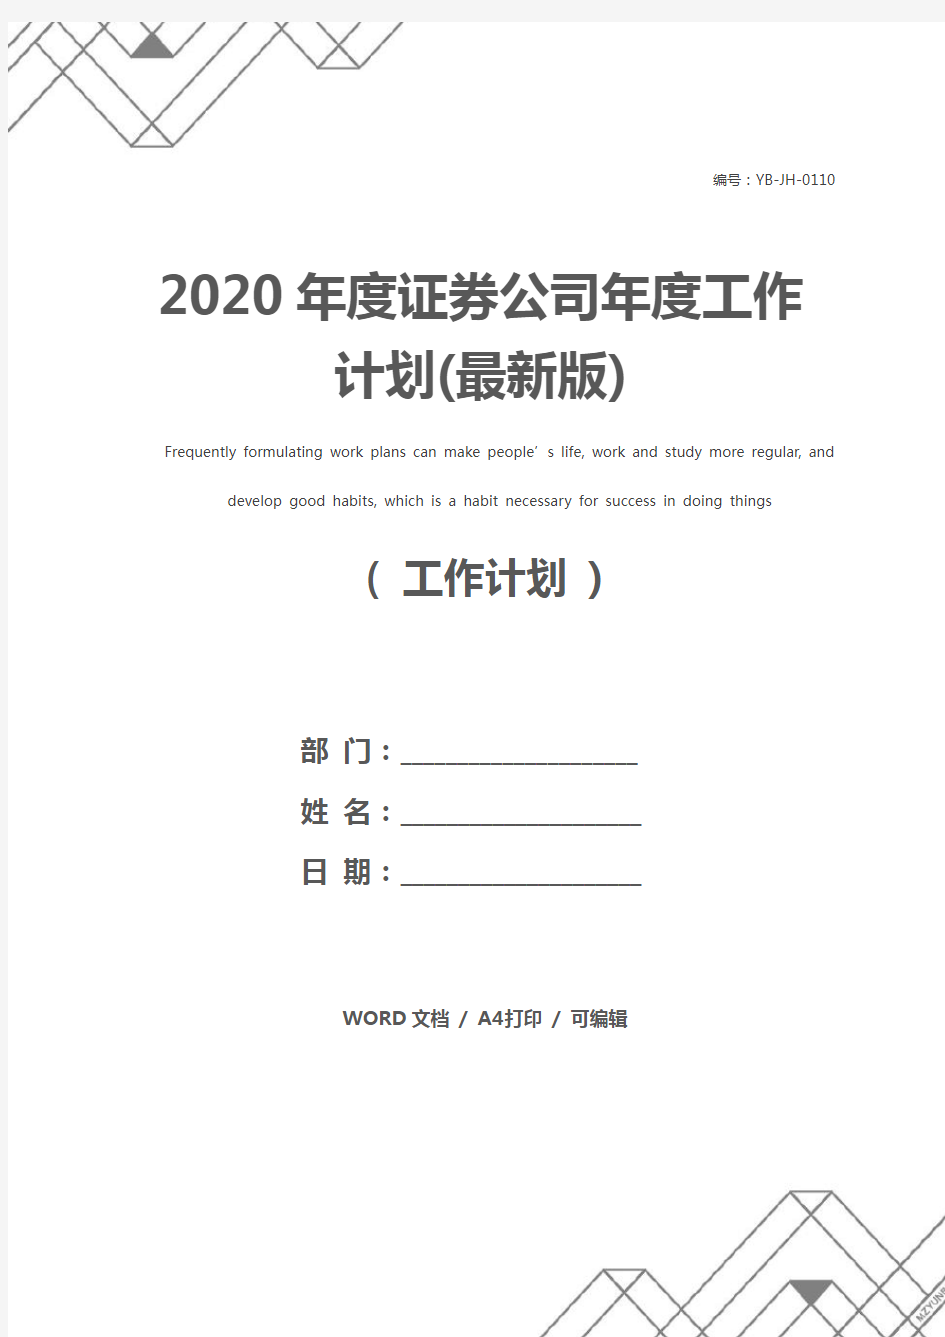 2020年度证券公司年度工作计划(最新版)